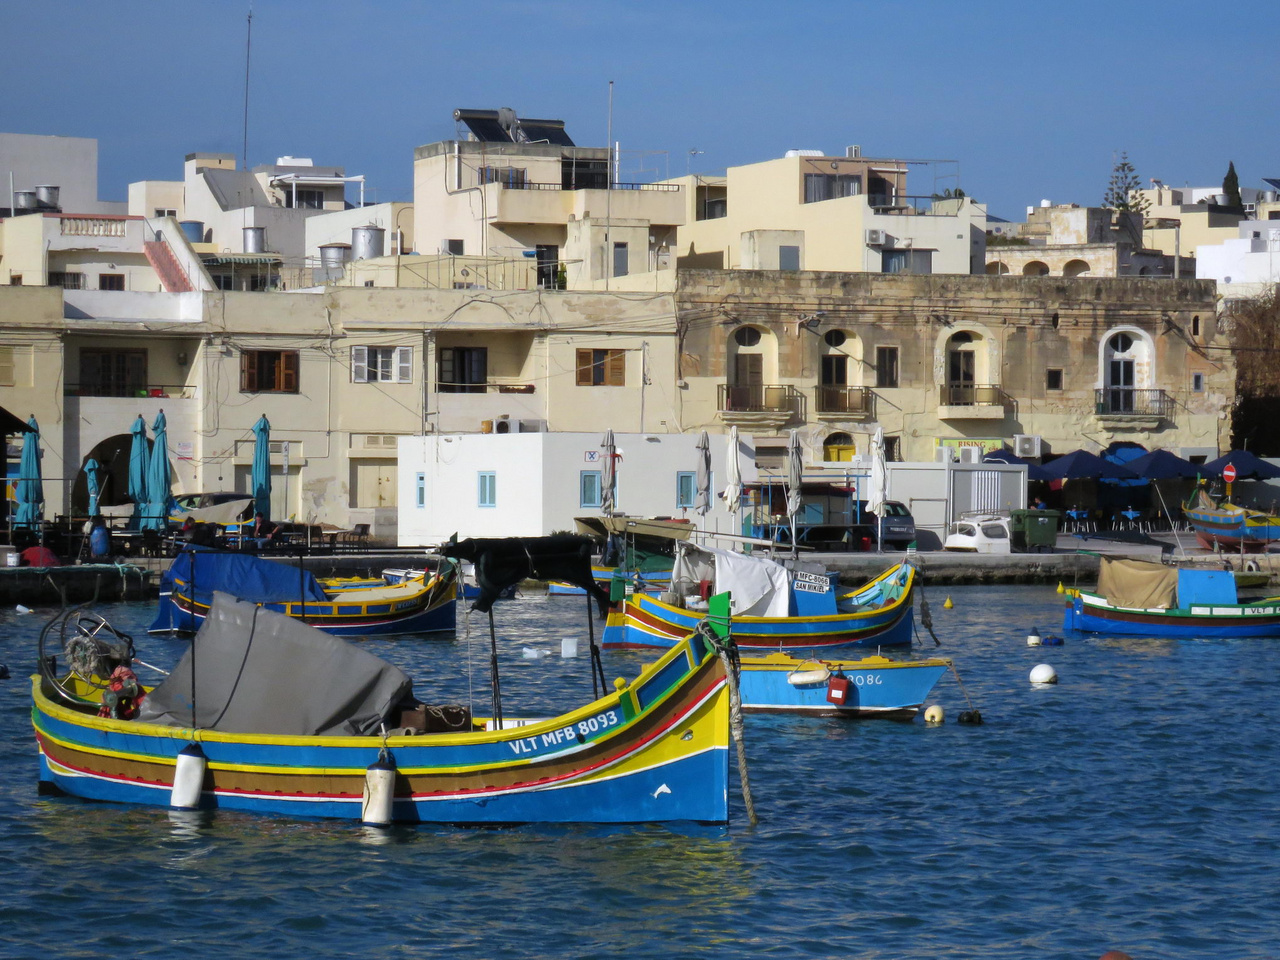 Az egyik unalomig ismert, de attól még hangulatos máltai közhely: Marsaxlokk városka halászkikötője, a jellegzetes, élénk és vidám színekre festett kis halászhajókkal és csónakokkal. Hétközben a fogást a vallettai halpiacra szállítják, vasárnaponként azonban a helyi piacon értékesítik a halászok. Aki hét közben szeretné megkóstolni a tenger gyümölcseit, a kikötő mentén sorakozó éttermekben természetesen gond nélkül megteheti. 